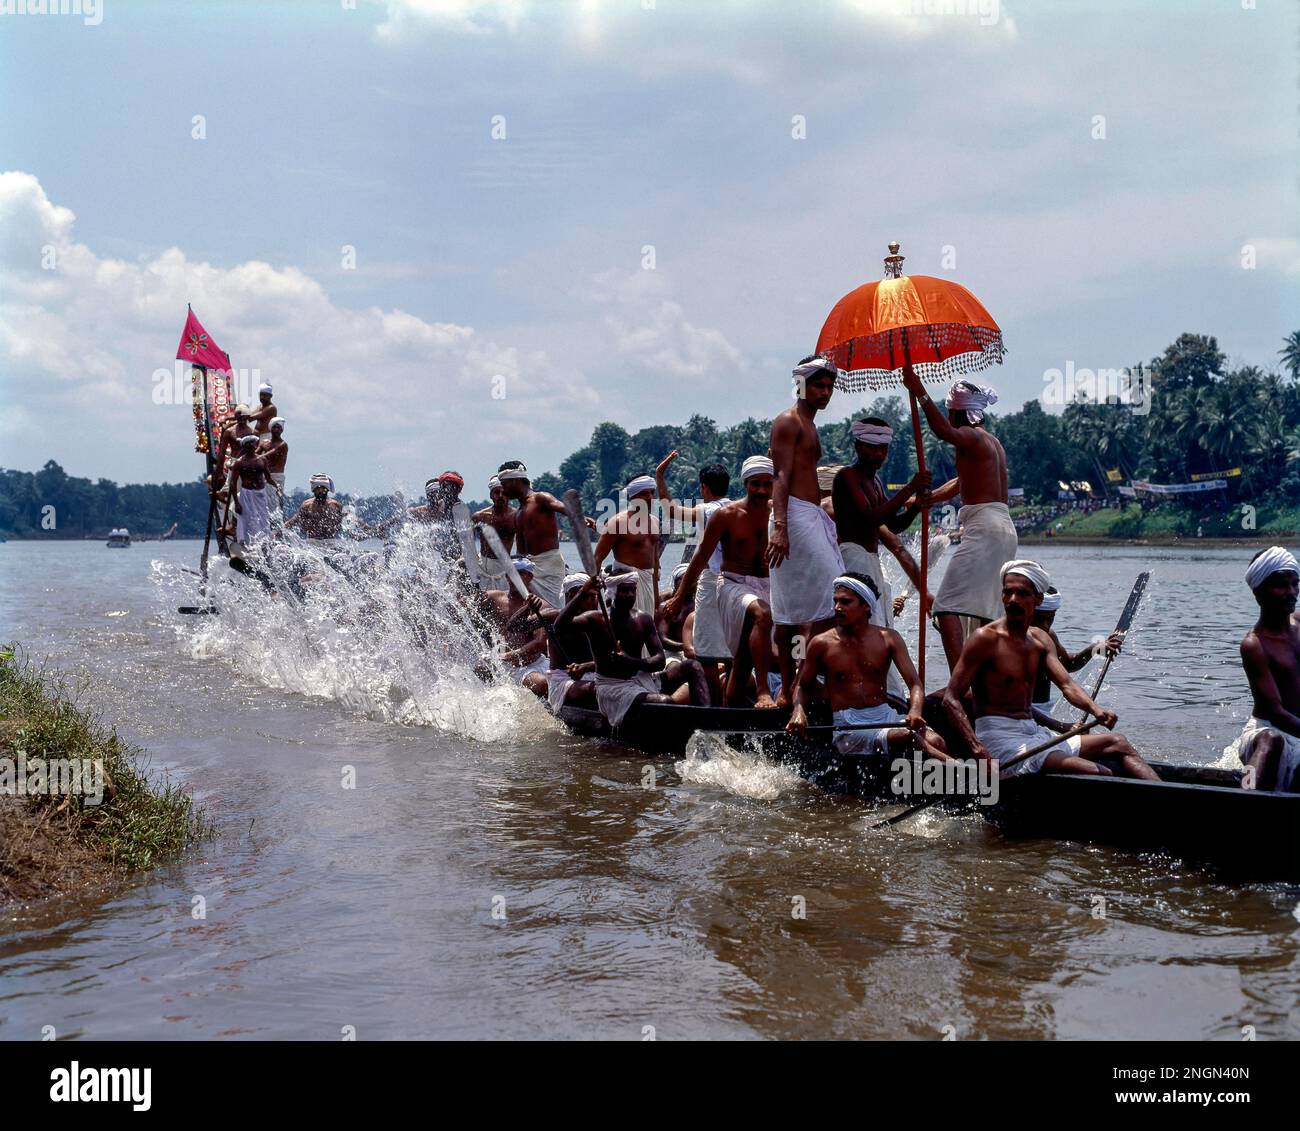 Festival de course de bateaux à serpent Aranmula vallamkali ou Aranmula, organisé pendant le festival Onam à Kerala, en Inde, en Asie Banque D'Images